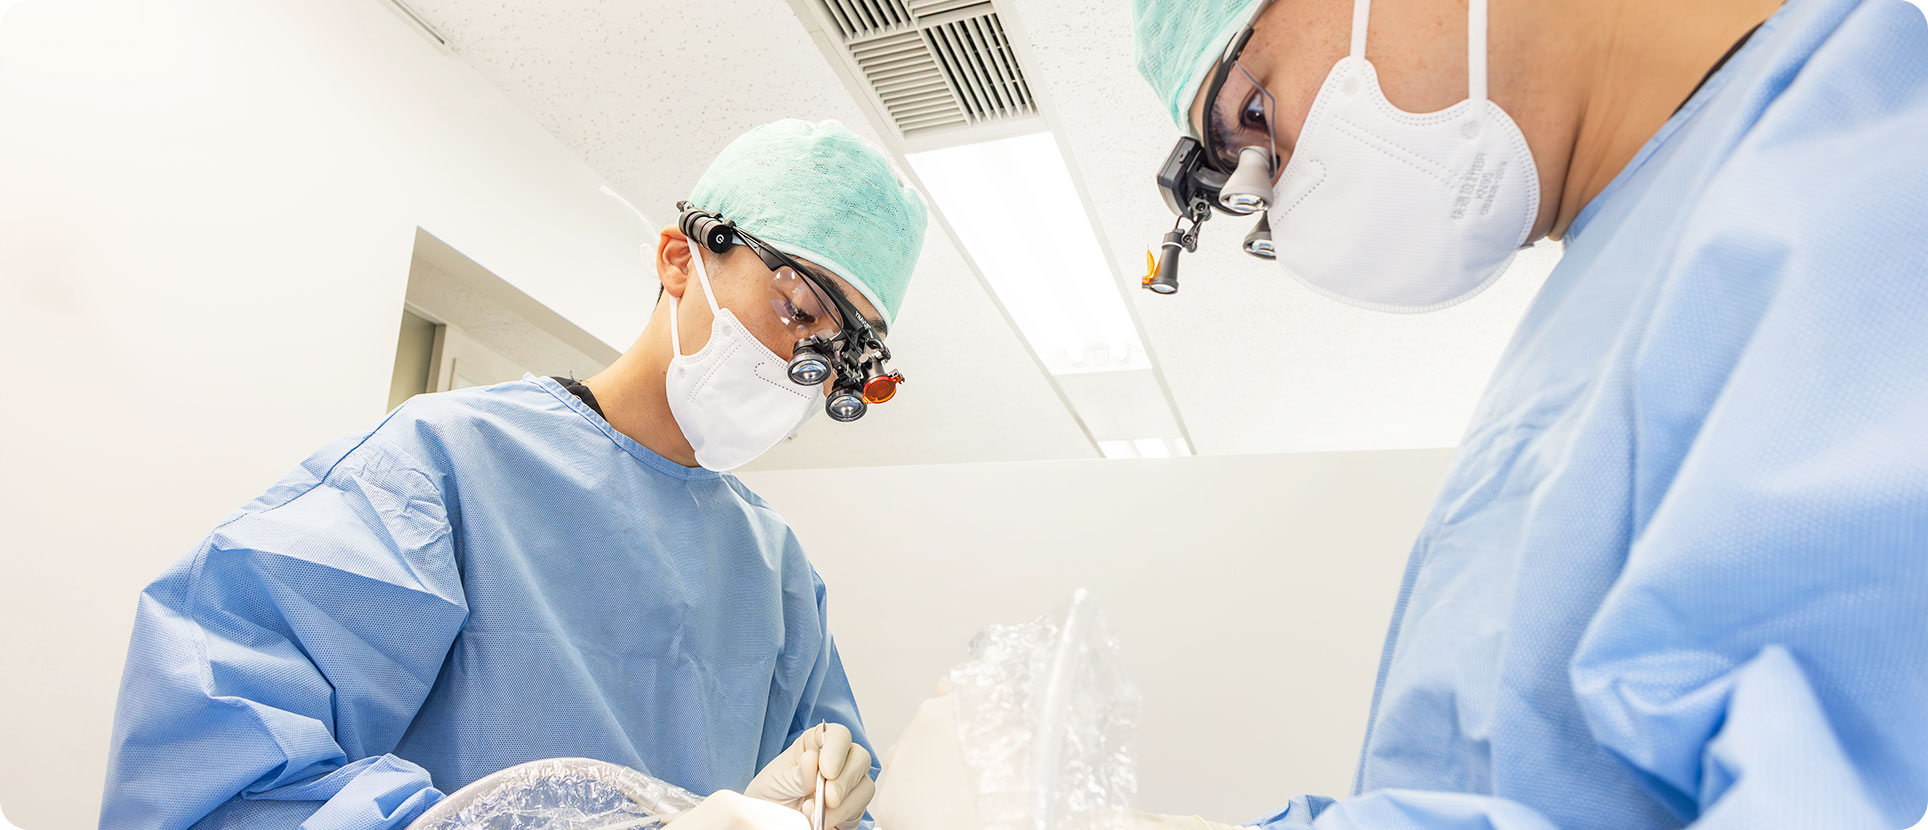 日本口腔外科学会所属の医師がインプラント手術を担当